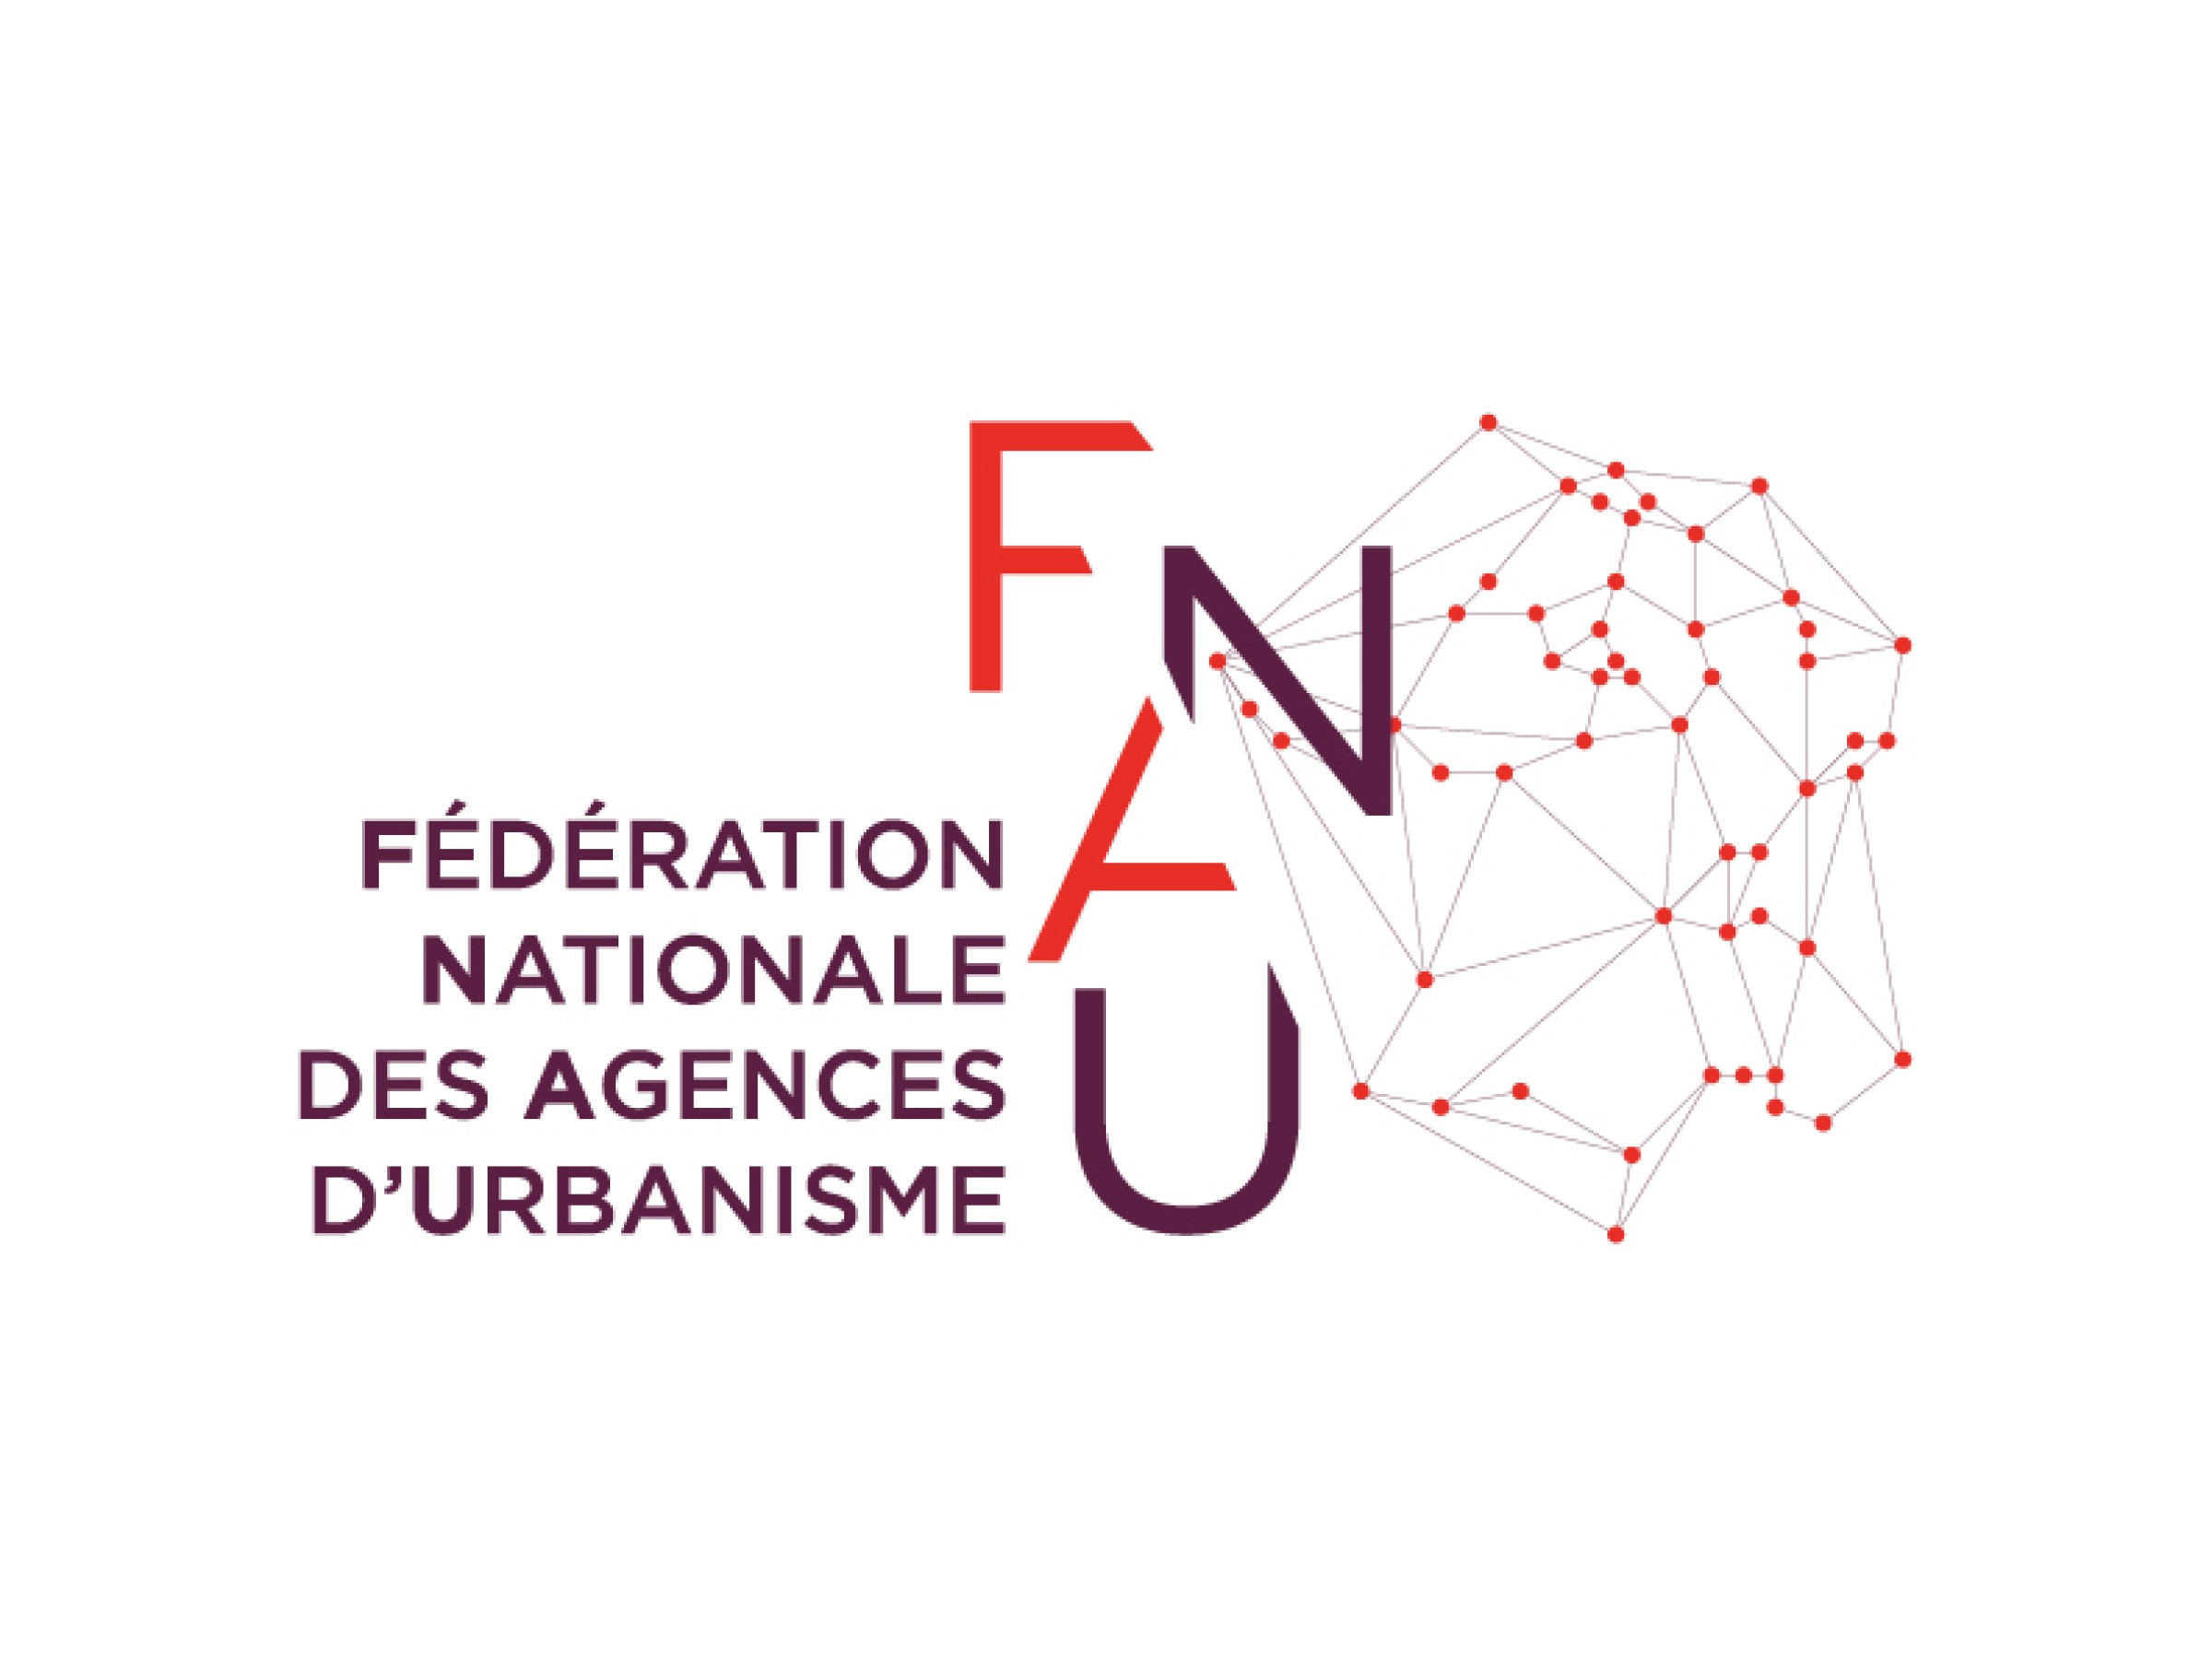 FNAU-logo-1